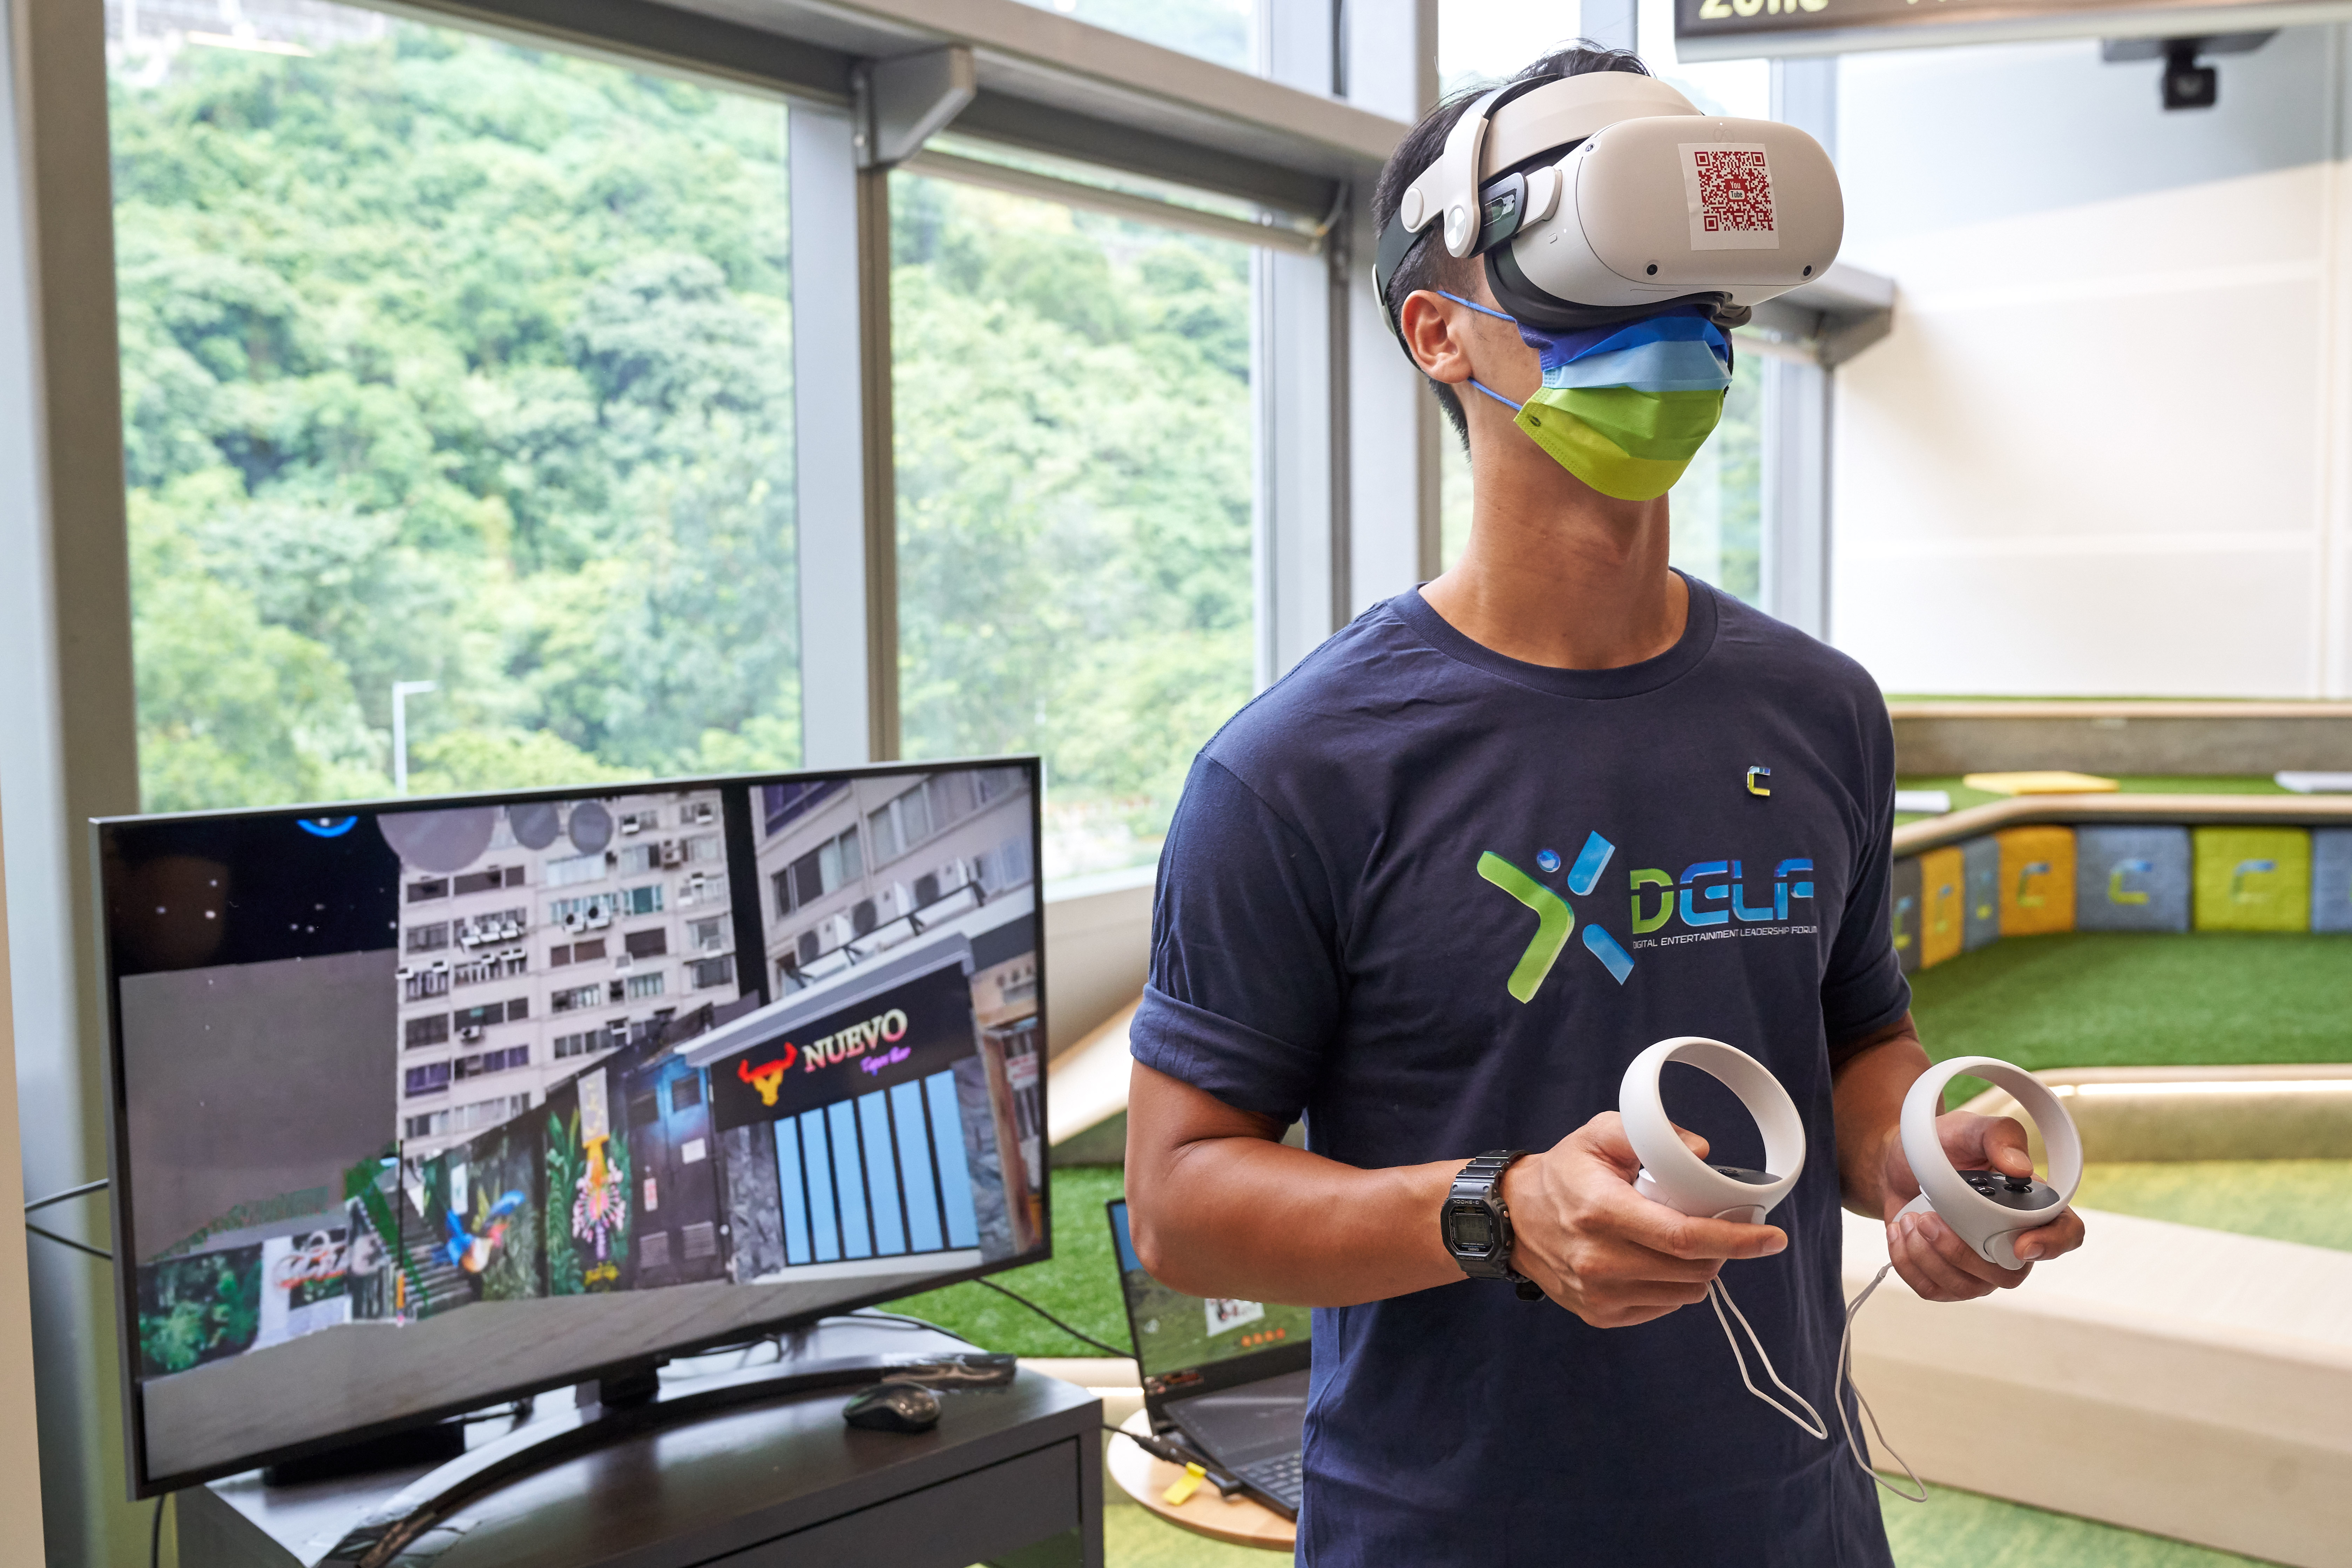 “元宇宙博览馆”戴上VR设备，进内元宇宙沉浸式游览香港昔日街景及观看艺术展。